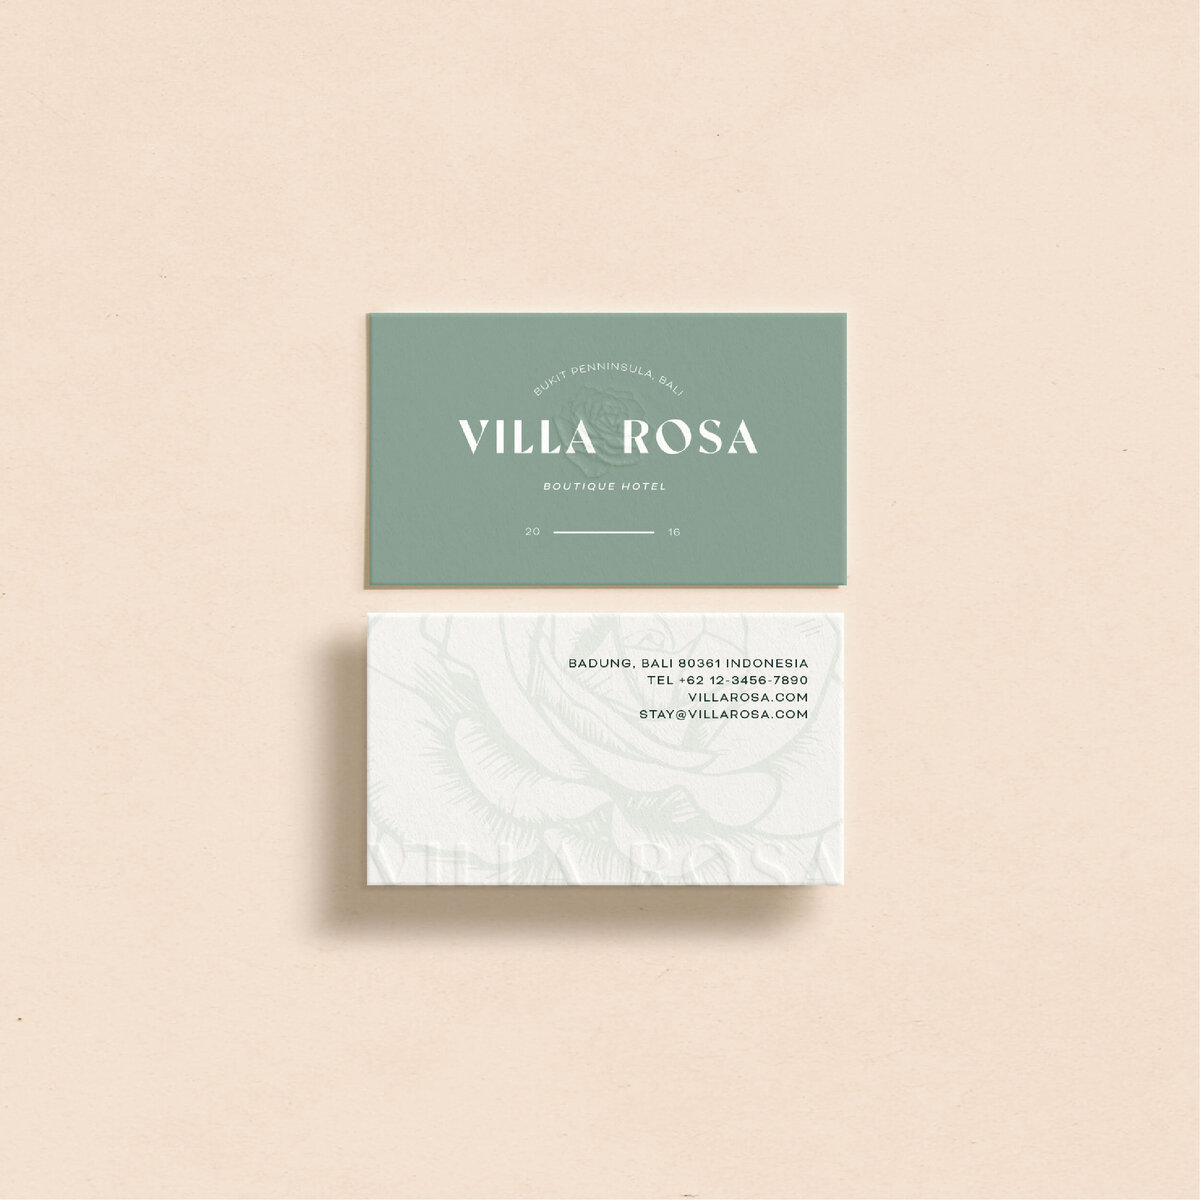 villa-rosa-assets-2.0-22